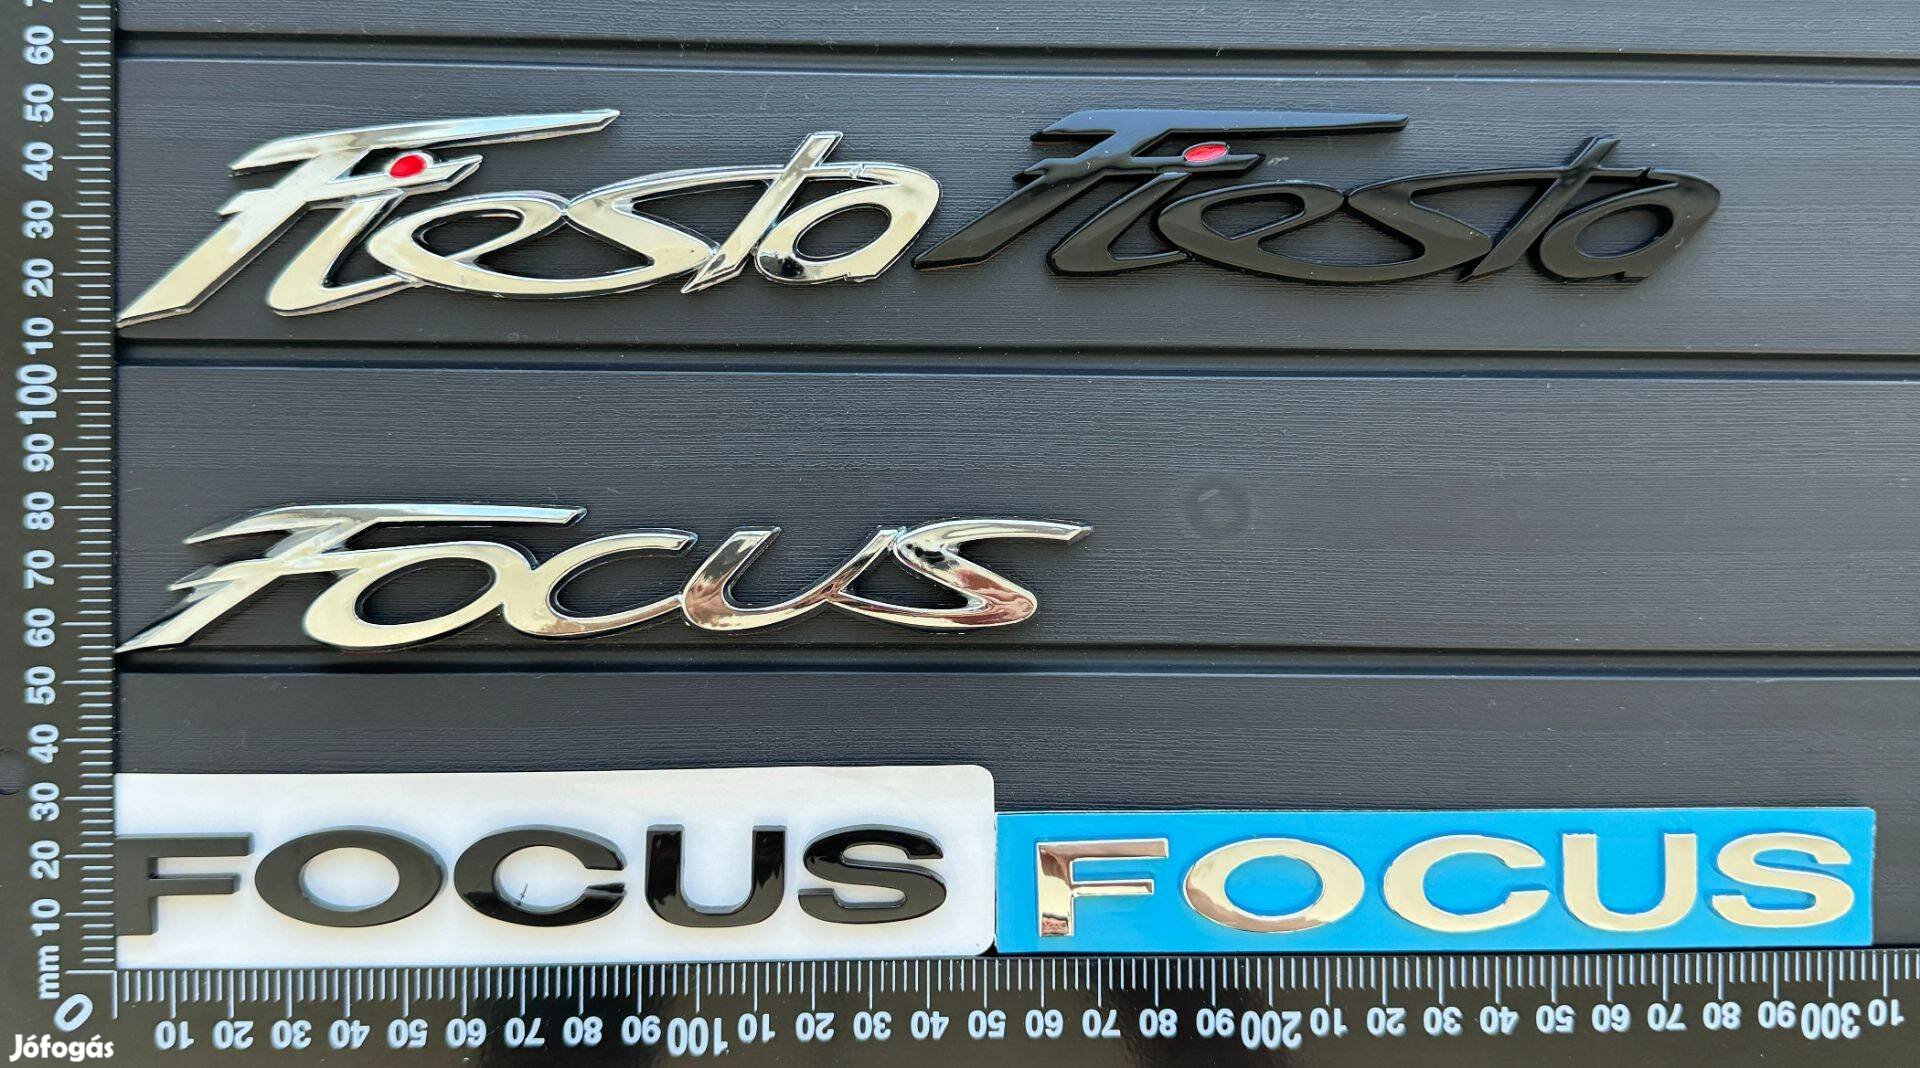 Új Ford Focus Fiesta JEL Logo Embléma Felirat Kiegészítő Matrica